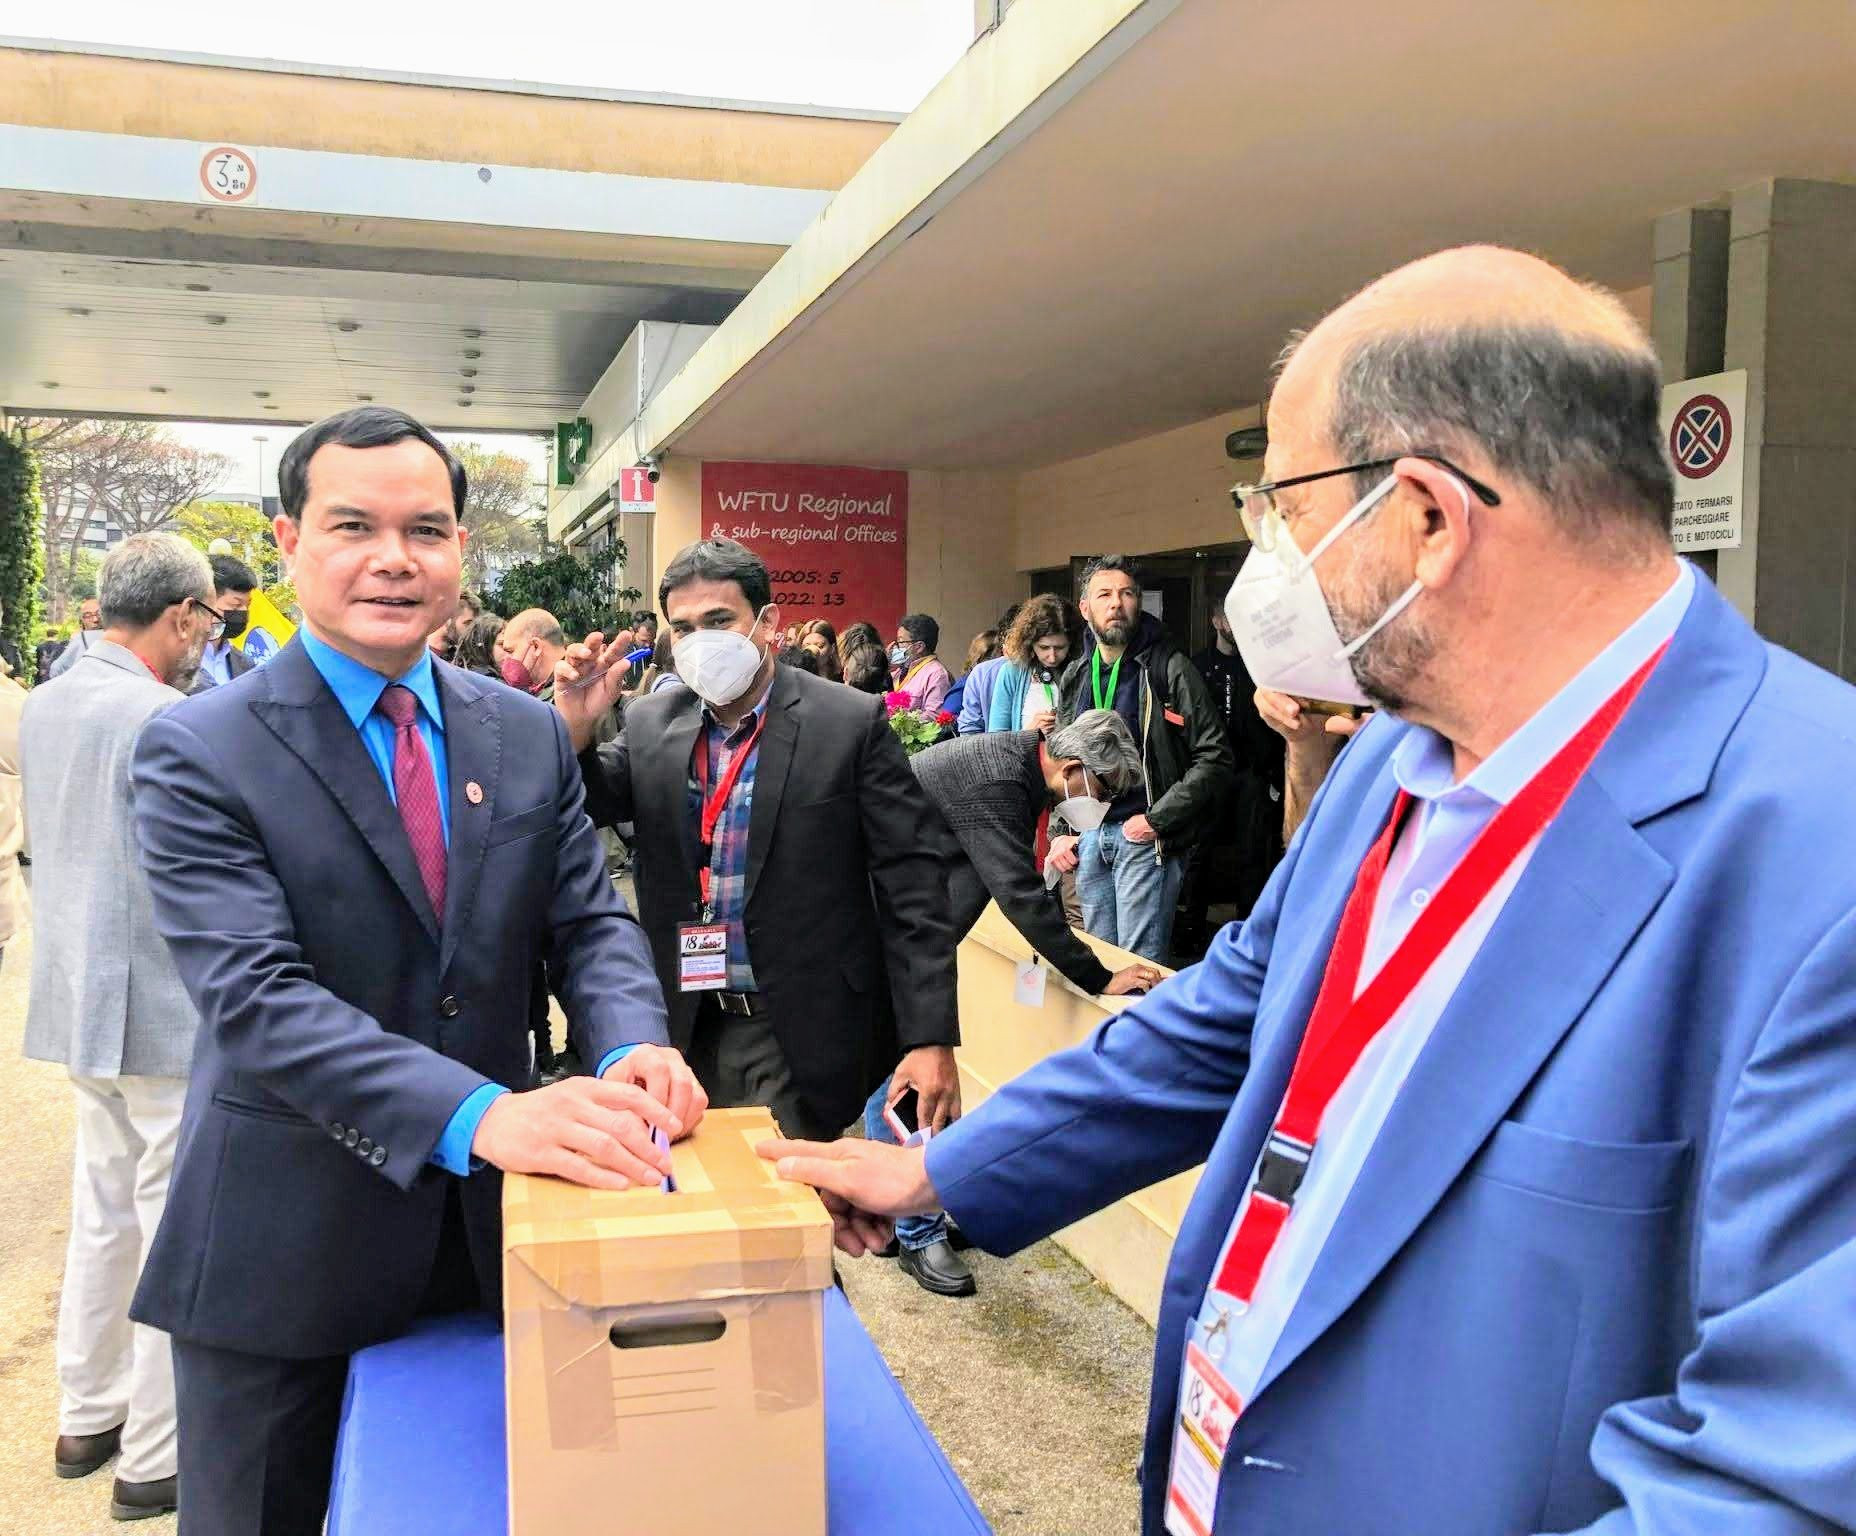 Ông Nguyễn Đình Khang thực hiện quyền bỏ phiếu tại Đại hội.